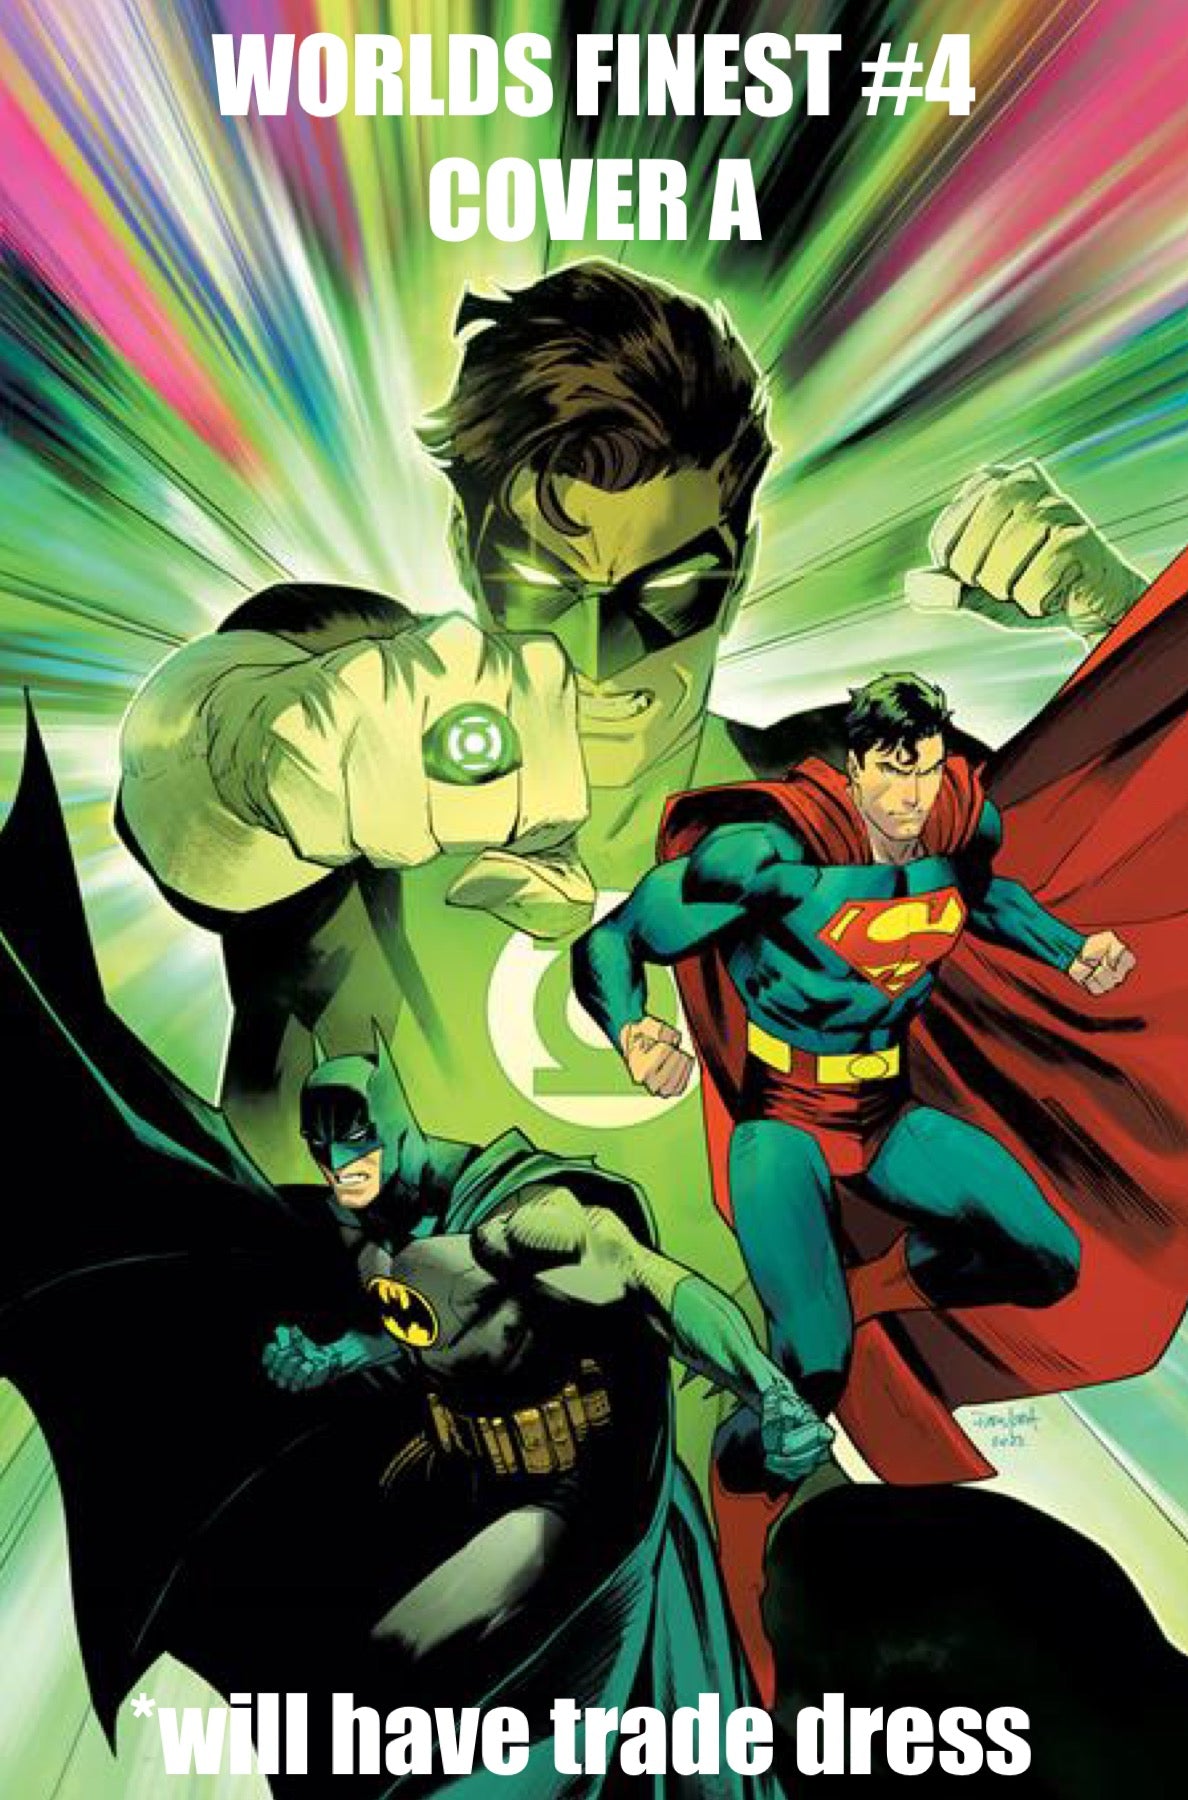 06/21/2022 BATMAN SUPERMAN WORLDS FINEST #4 CVR A DAN MORA